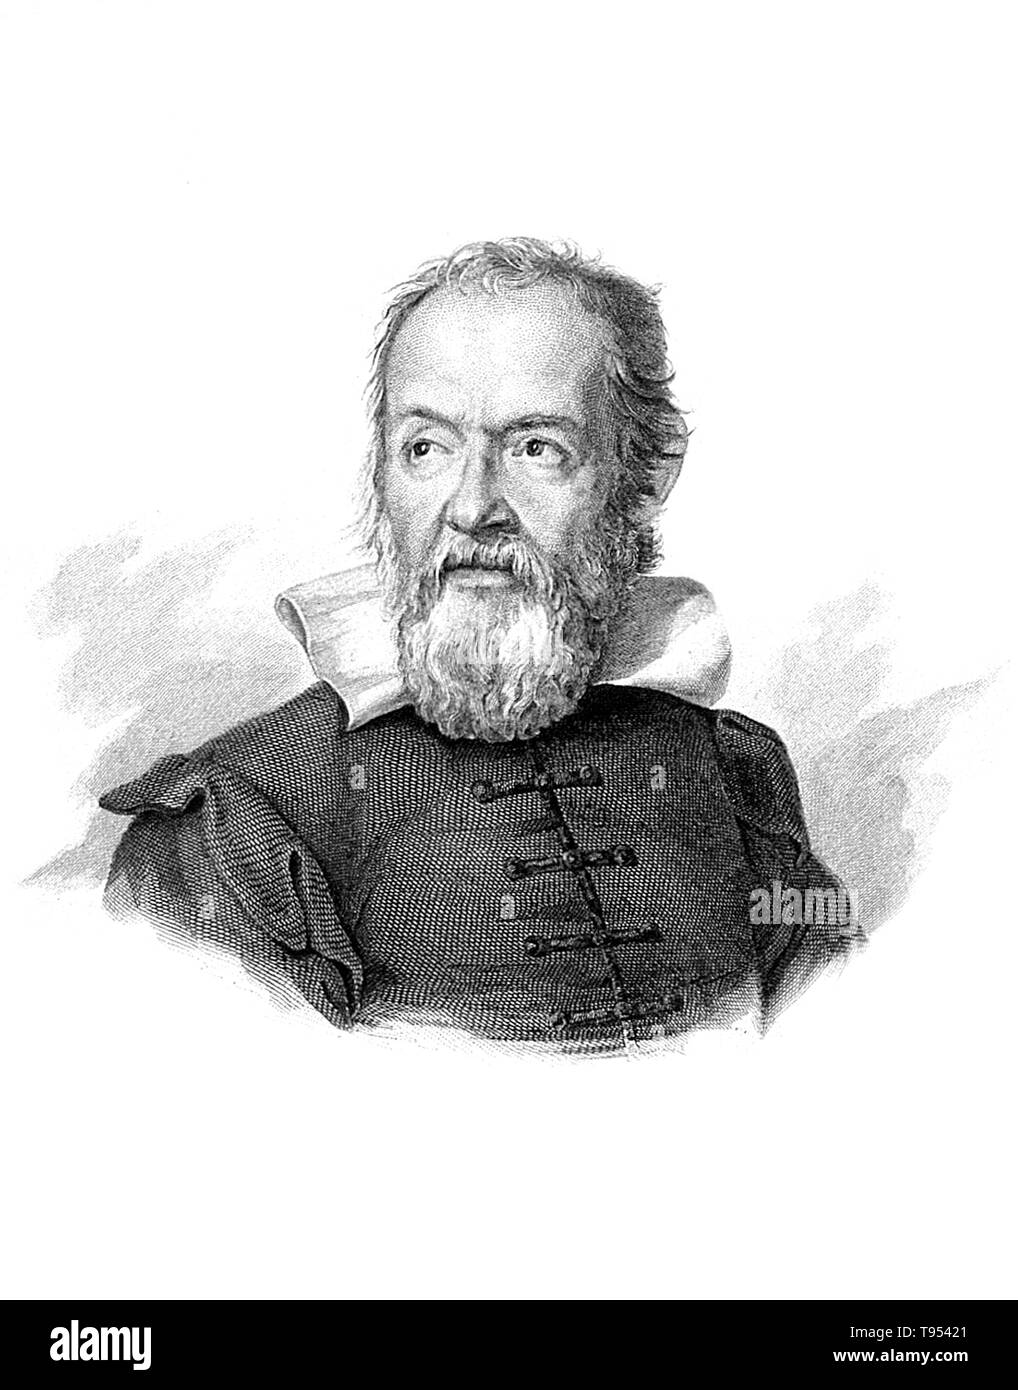 Galileo Galilei (Febbraio 15, 1564 - 8 gennaio 1642) era un fisico italiano, matematico, astronomo e filosofo che ha giocato un ruolo importante nella Rivoluzione Scientifica. I suoi successi includono miglioramenti al telescopio, importanti osservazioni astronomiche e supporto per Copernicanism. Egli è stato chiamato il padre della moderna astronomia osservativa', il 'padre della fisica moderna', il 'padre della scienza' e 'il padre della moderna scienza". Foto Stock